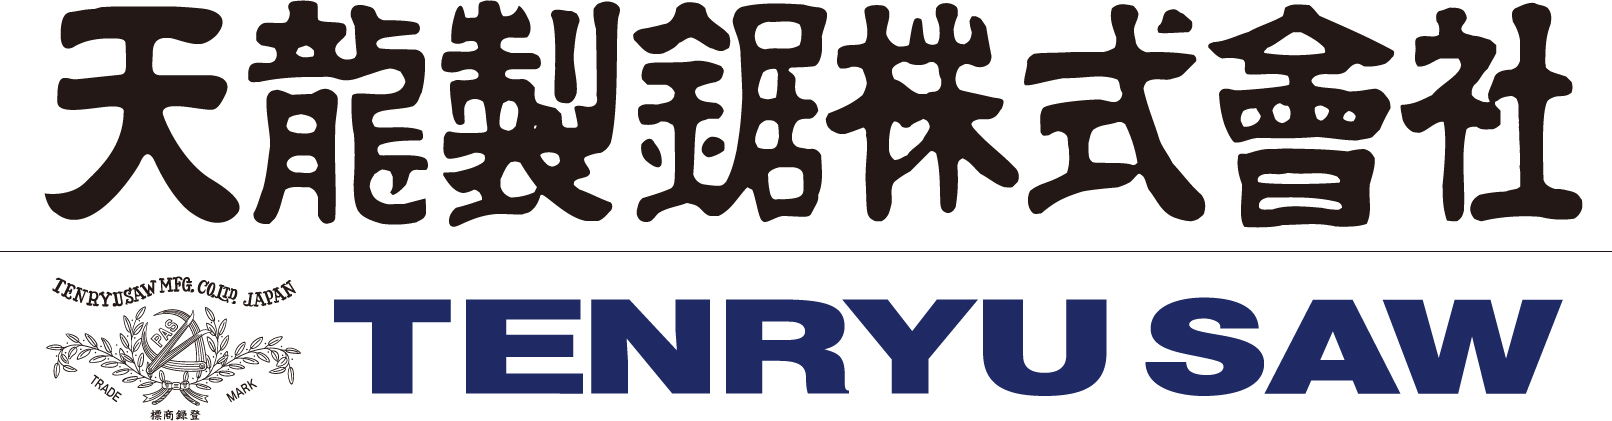 Tenryu Saw Mfg. Co.,Ltd